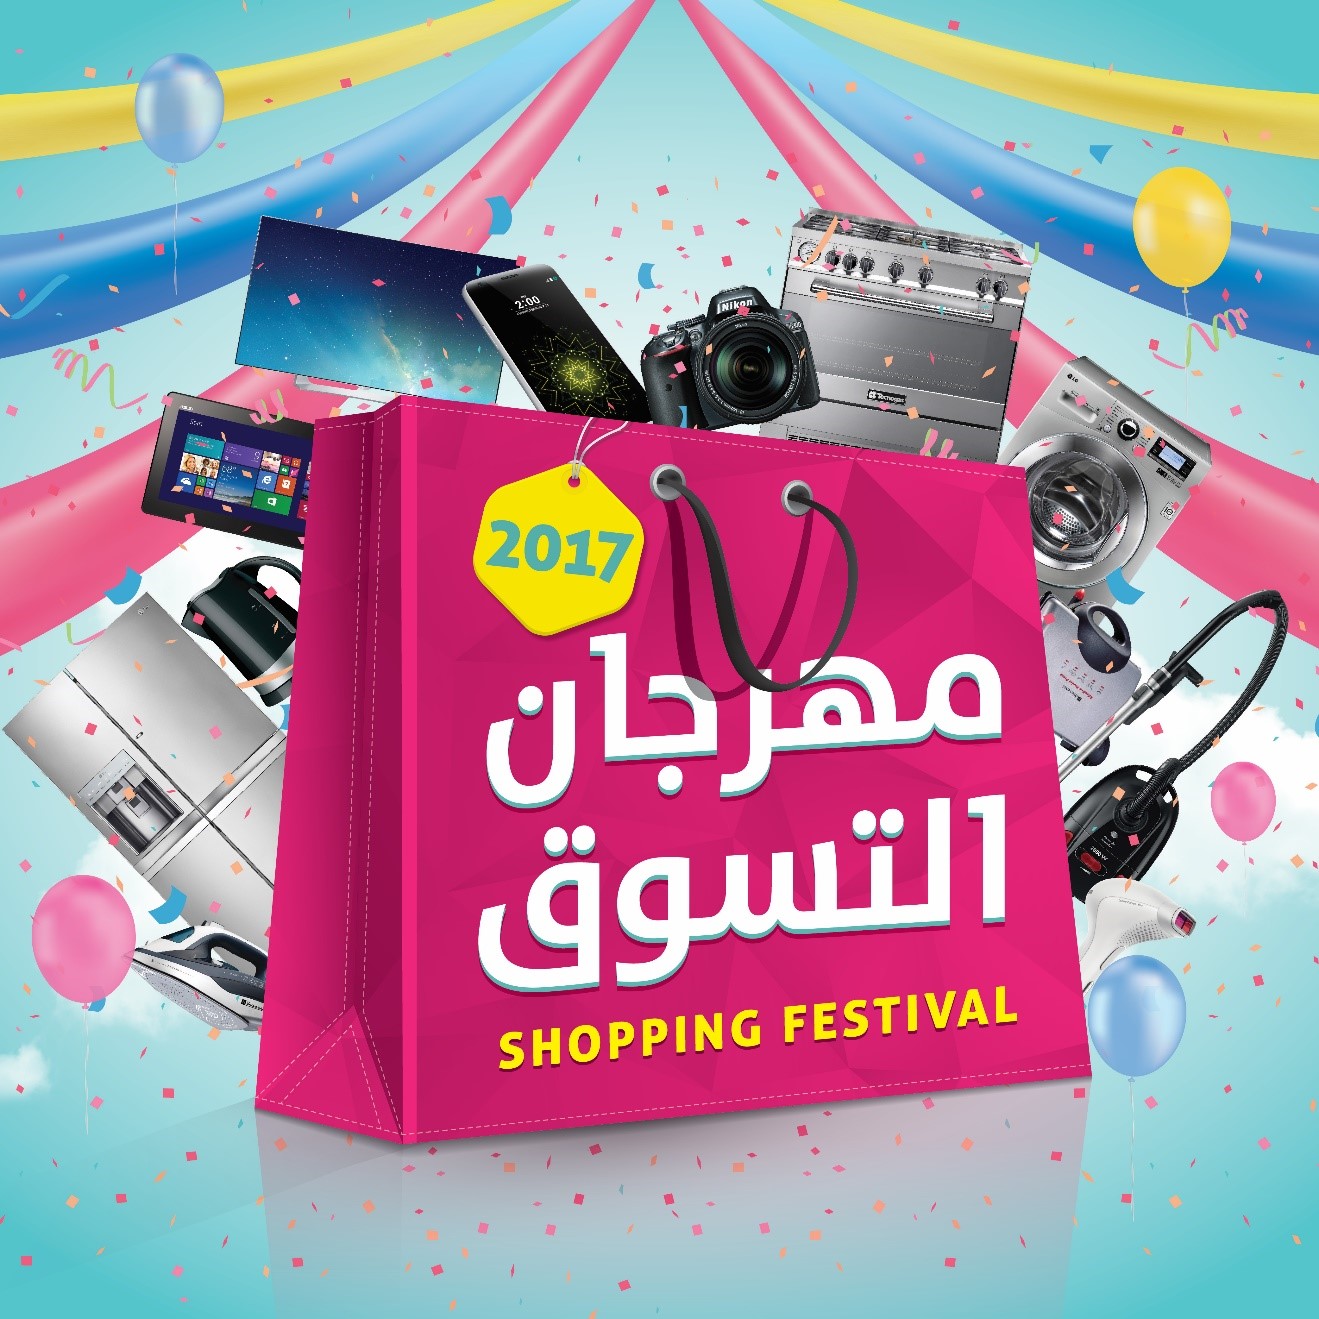 سبيتاني تطلق حملة مهرجان التسوق لعام 2017